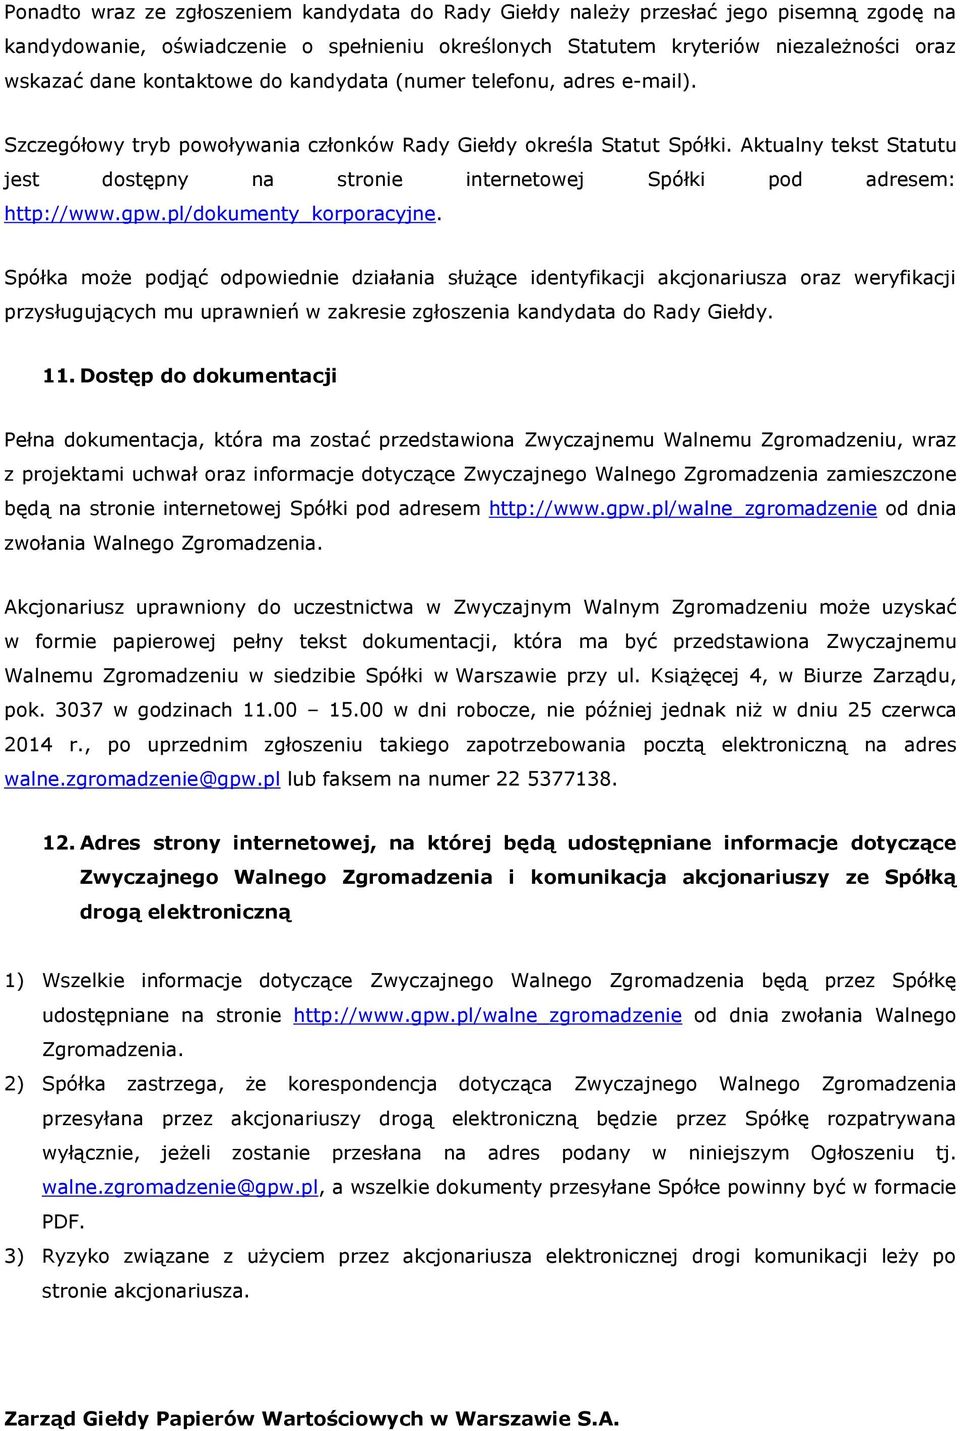 Aktualny tekst Statutu jest dostępny na stronie internetowej Spółki pod adresem: http://www.gpw.pl/dokumenty_korporacyjne.